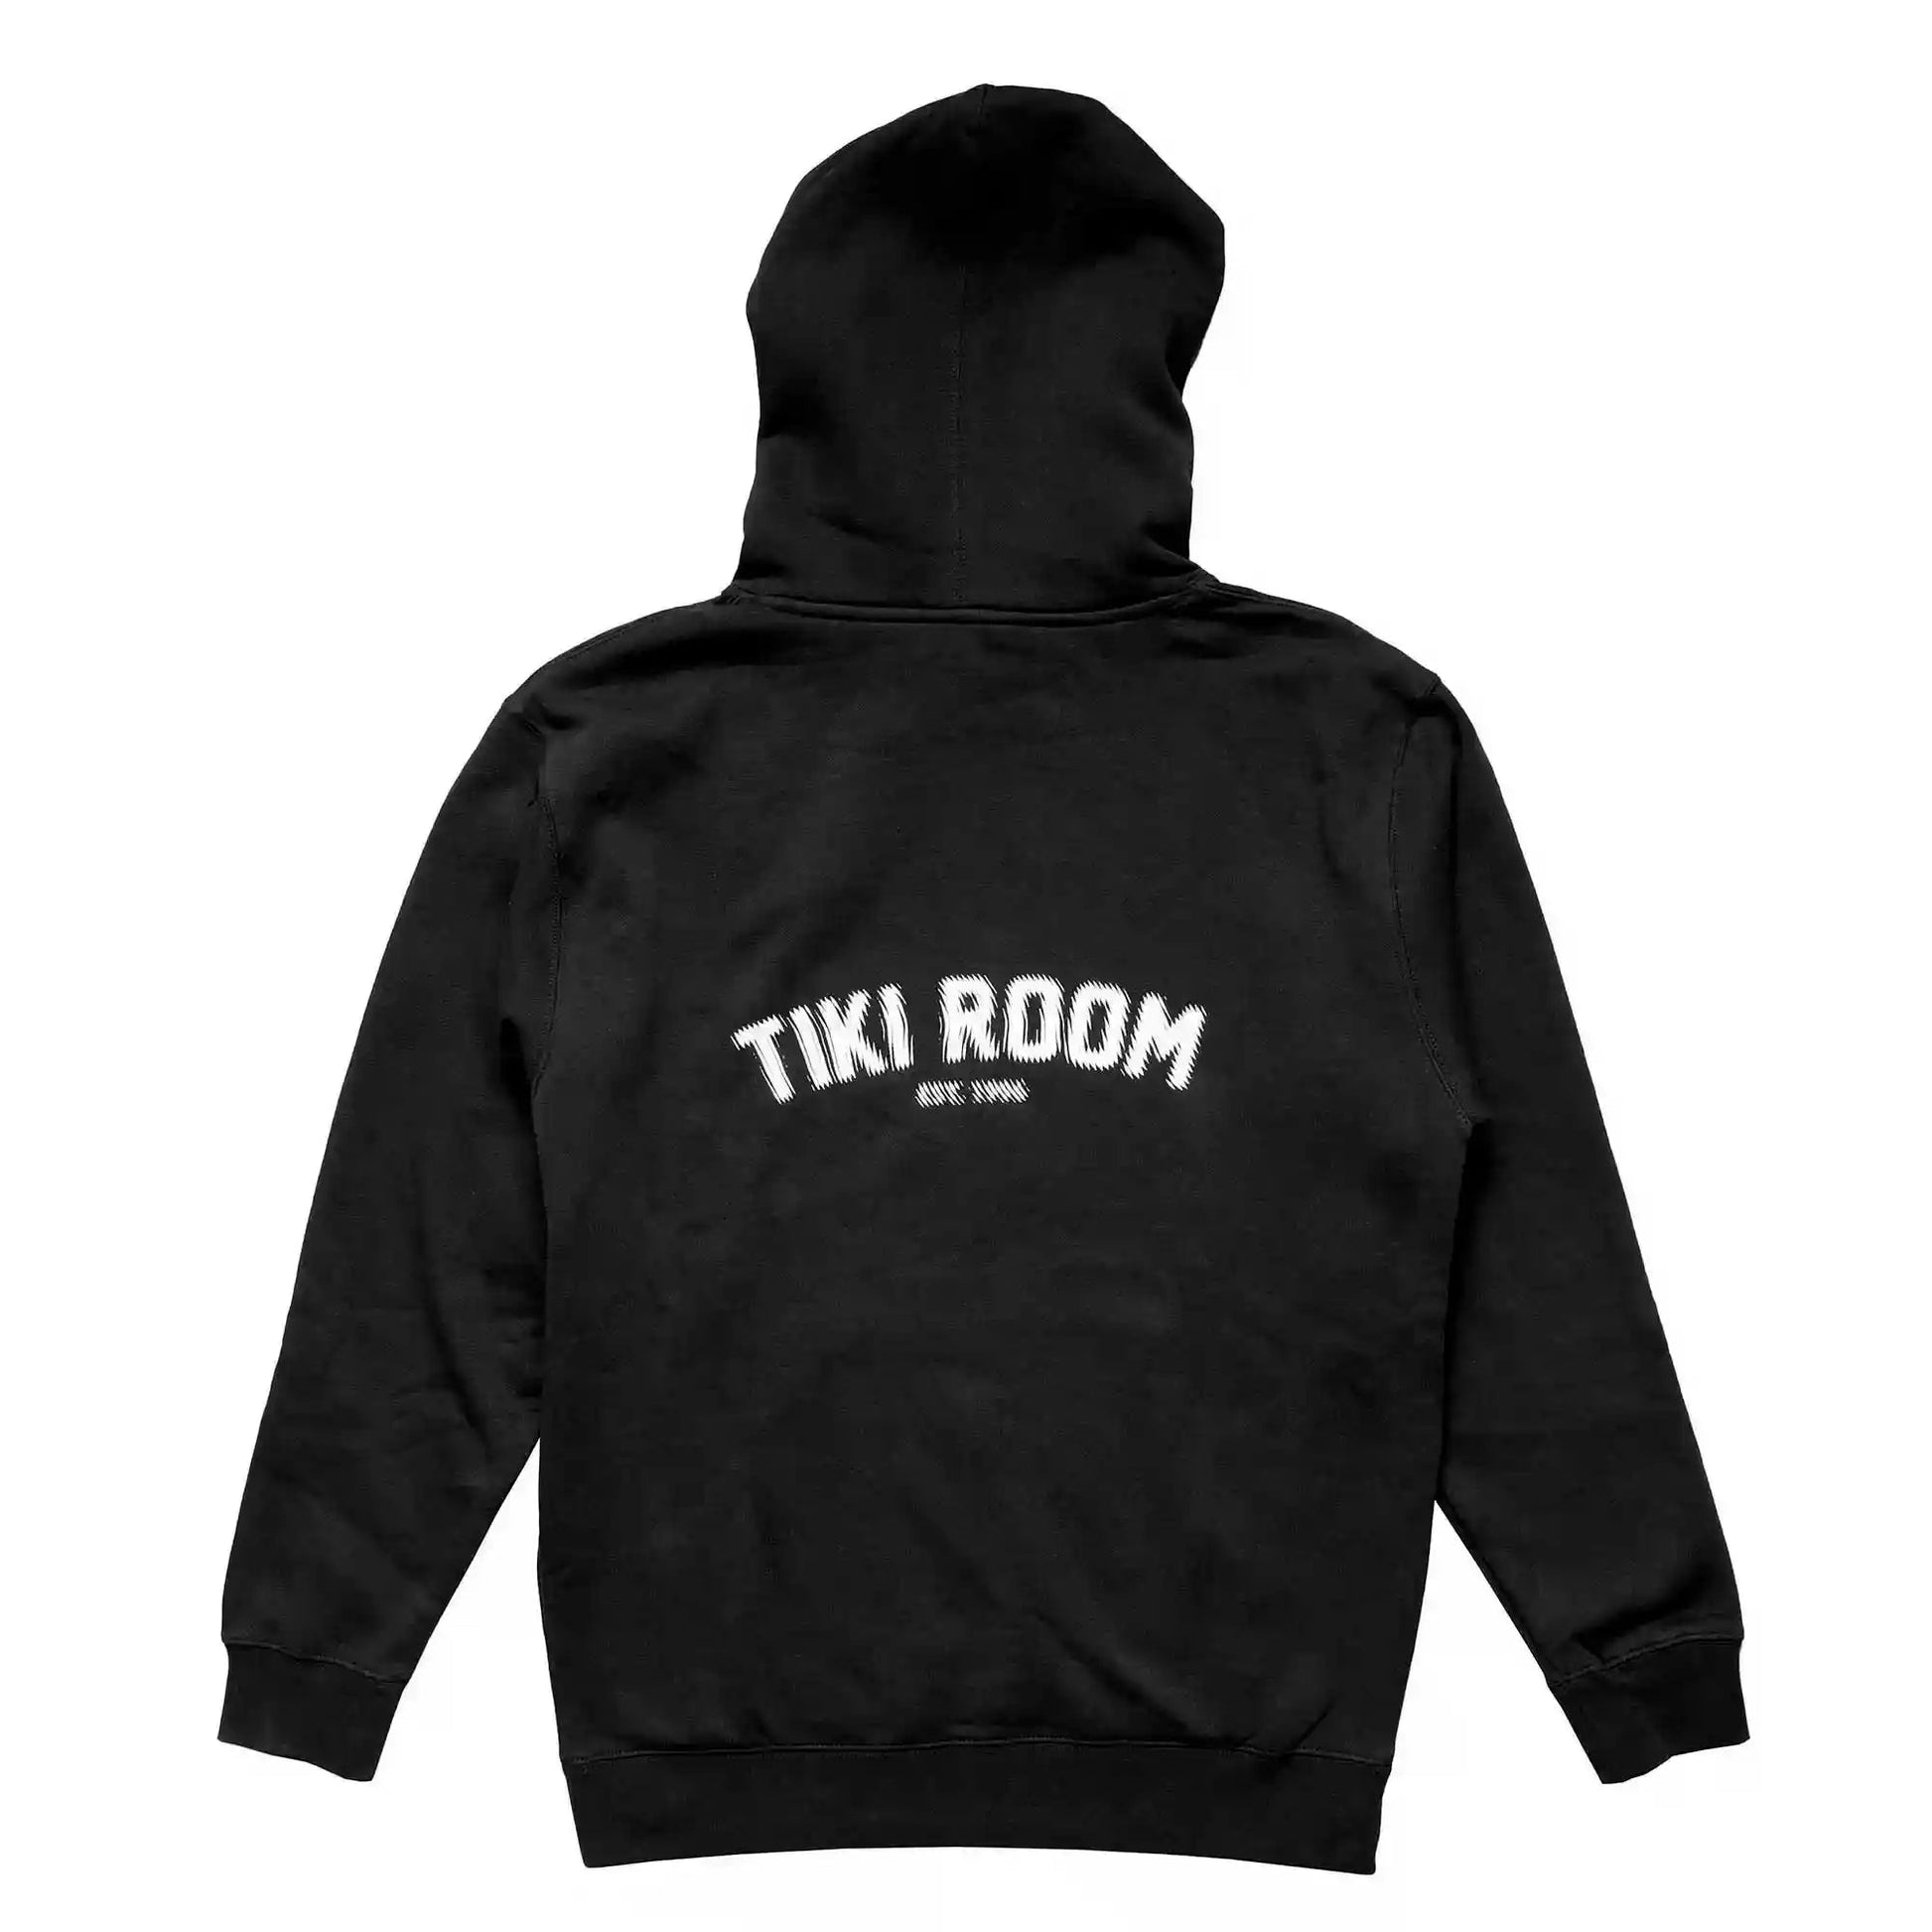 Tiki Room Halftone Arch Hoodie, black - Tiki Room Skateboards - 3